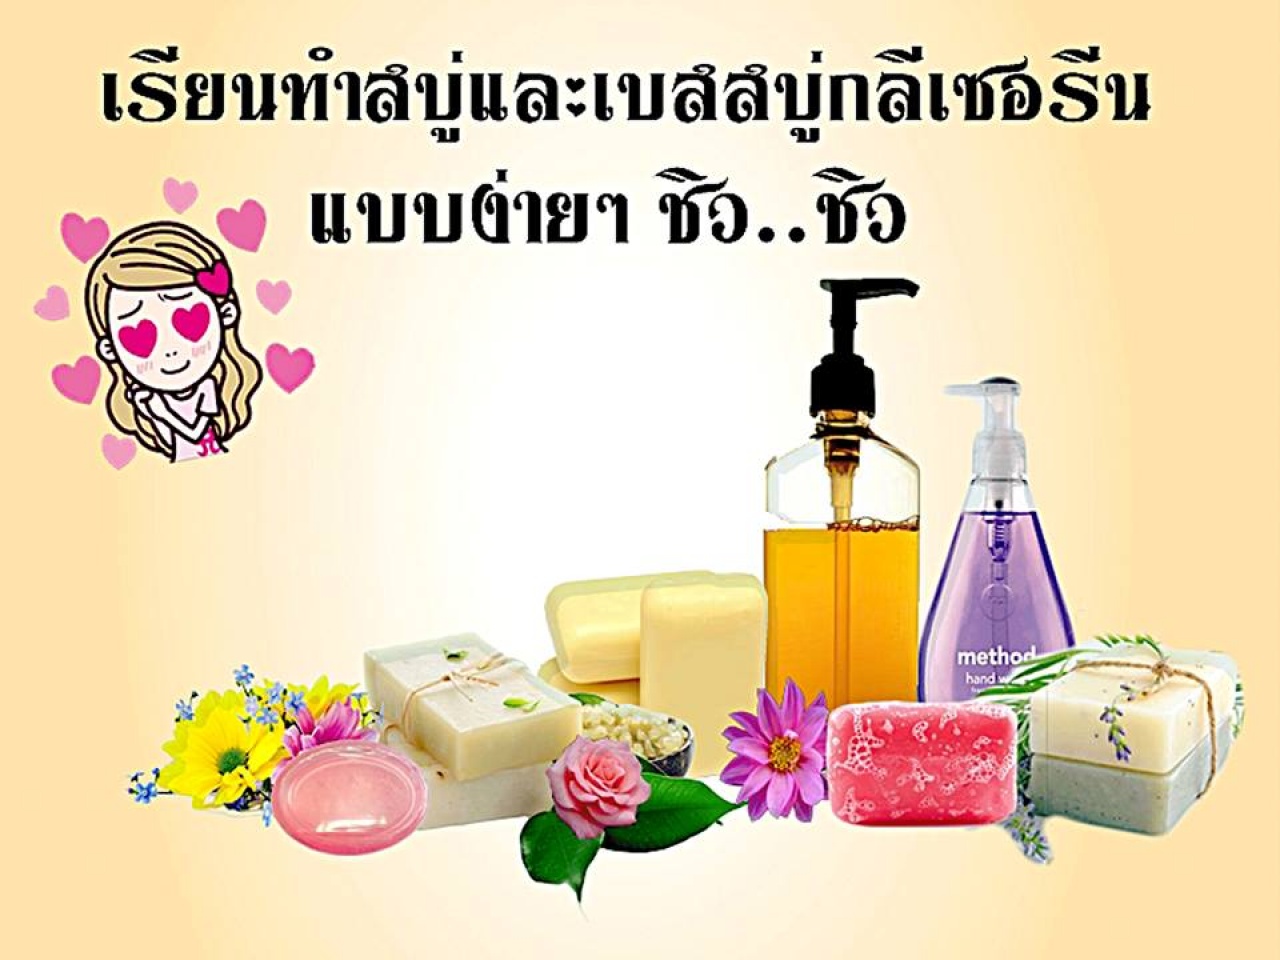 หลักสูตรการทำผลิตภัณฑ์สบู่ก้อน สบู่เหลวธรรมชาติ 100% จากสมุนไพรไทย